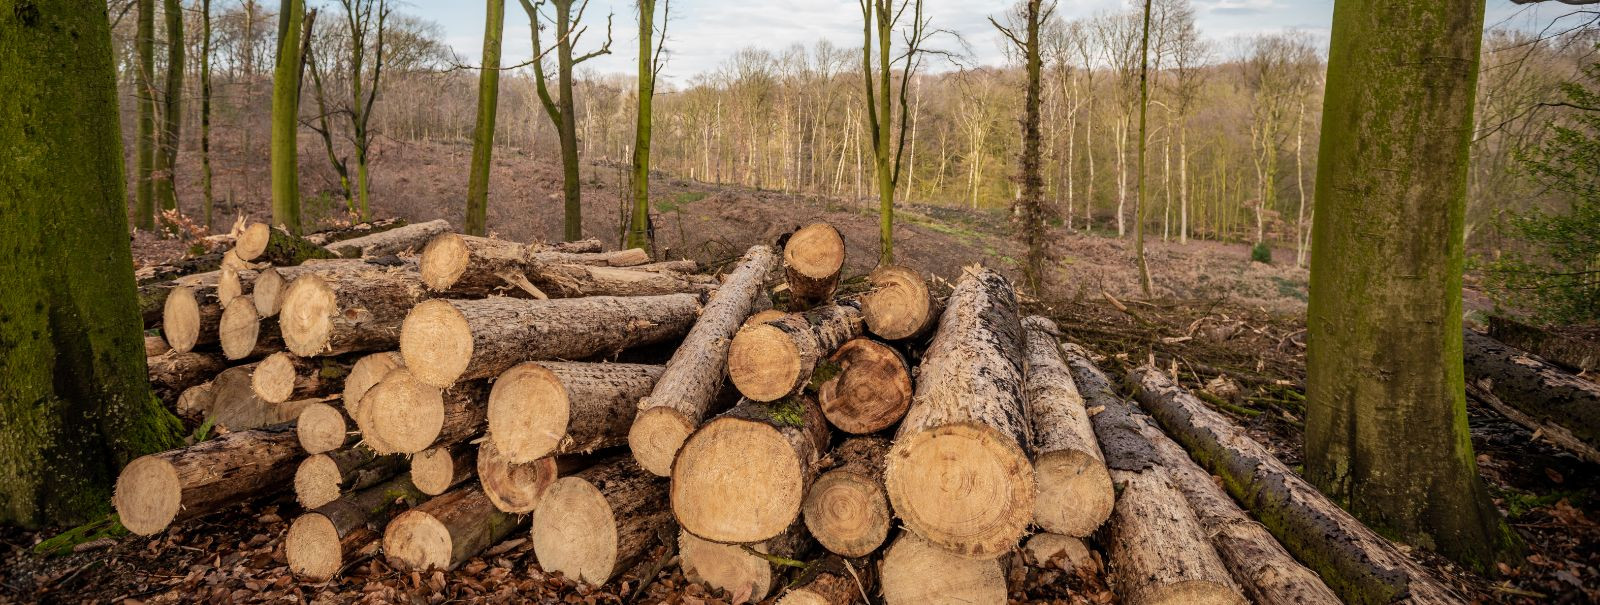 Jätkusuutlik metsandus on majandamisfilosoofia, mis tasakaalustab majanduslikke, sotsiaalseid ja keskkonnaalaseid vajadusi praeguste ja tulevaste põlvkondade ja